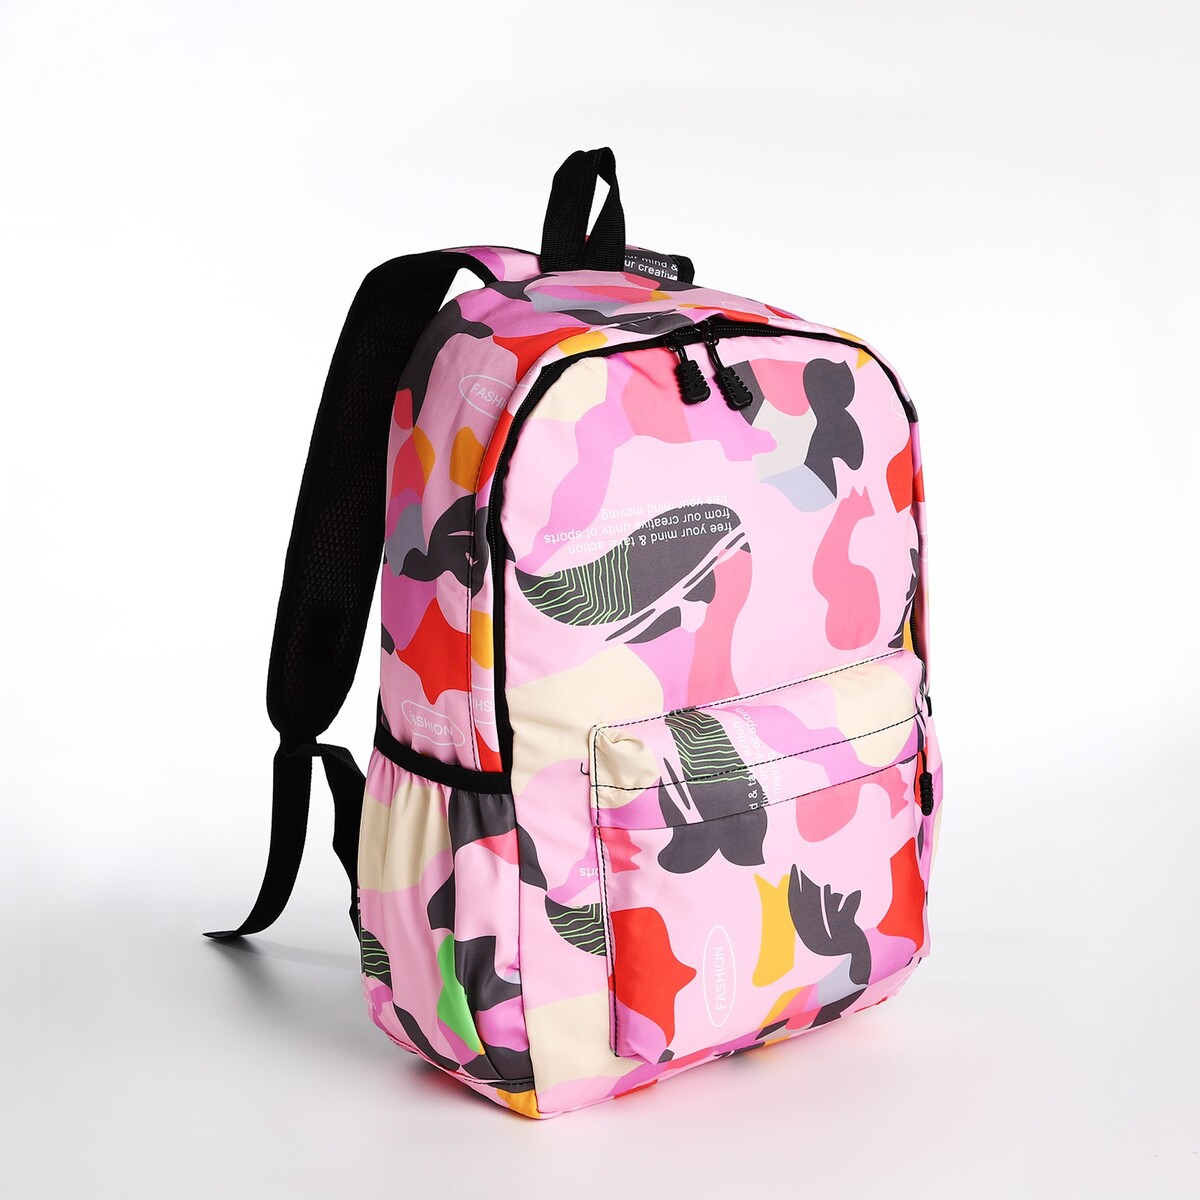 Рюкзак молодежный из текстиля, 3 кармана, цвет розовый рюкзак молодежный из текстиля на молнии 3 кармана поясная сумка голубой белый розовый